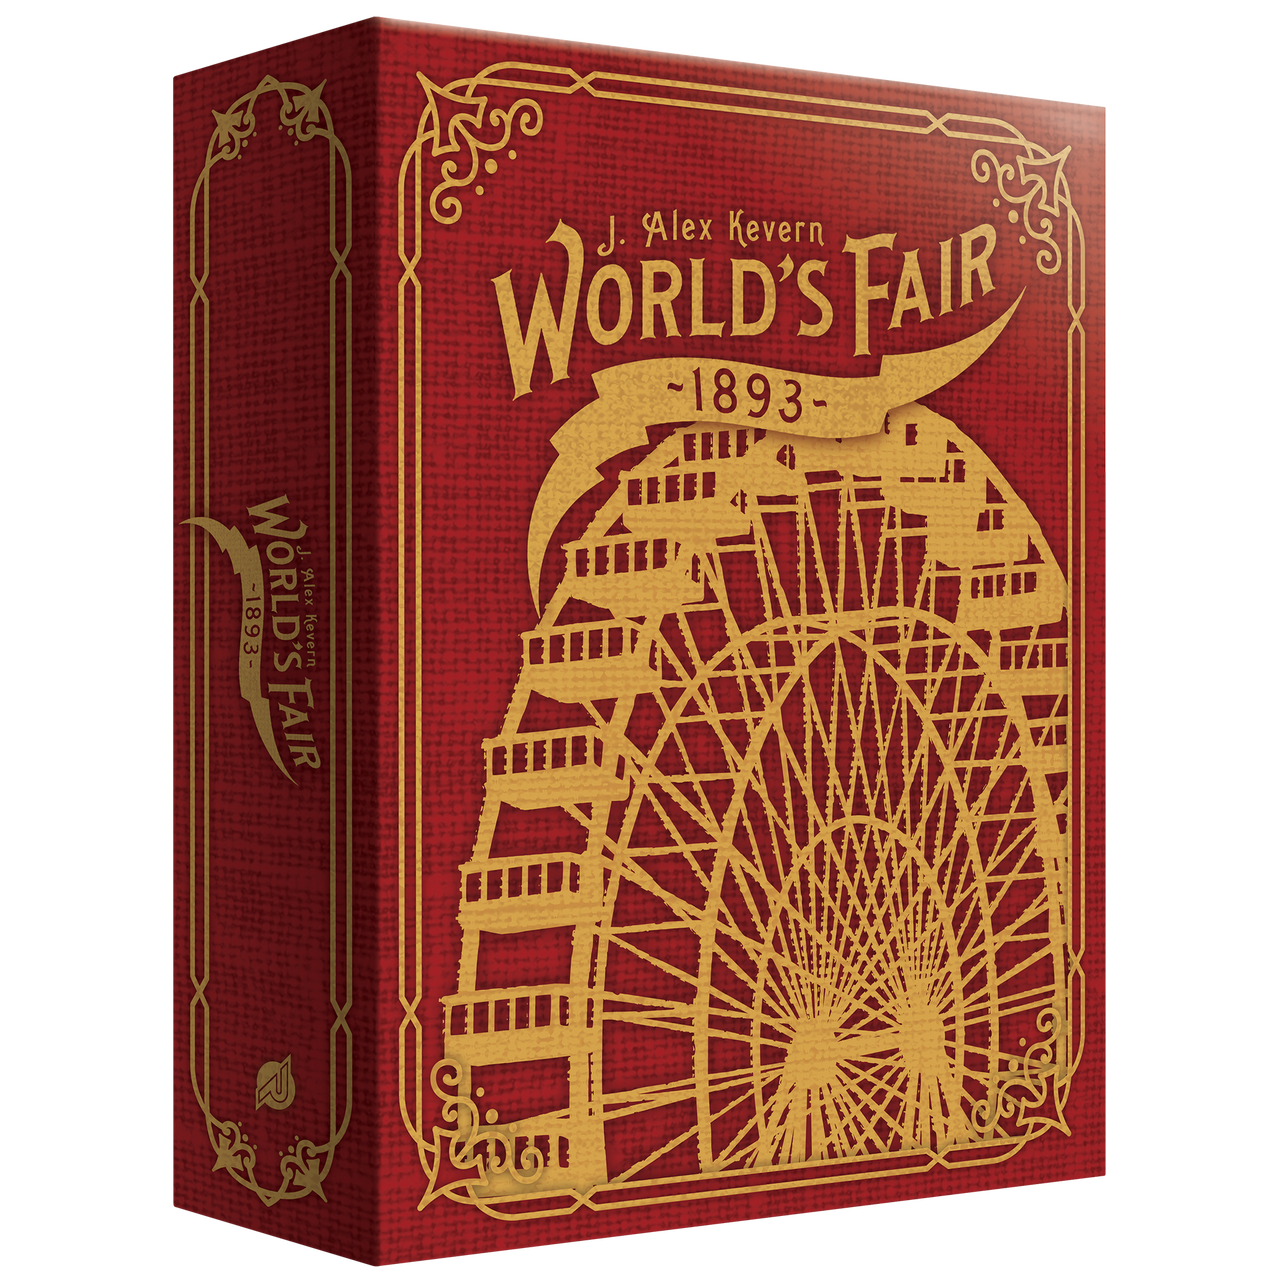 WORLD'S FAIR 1893